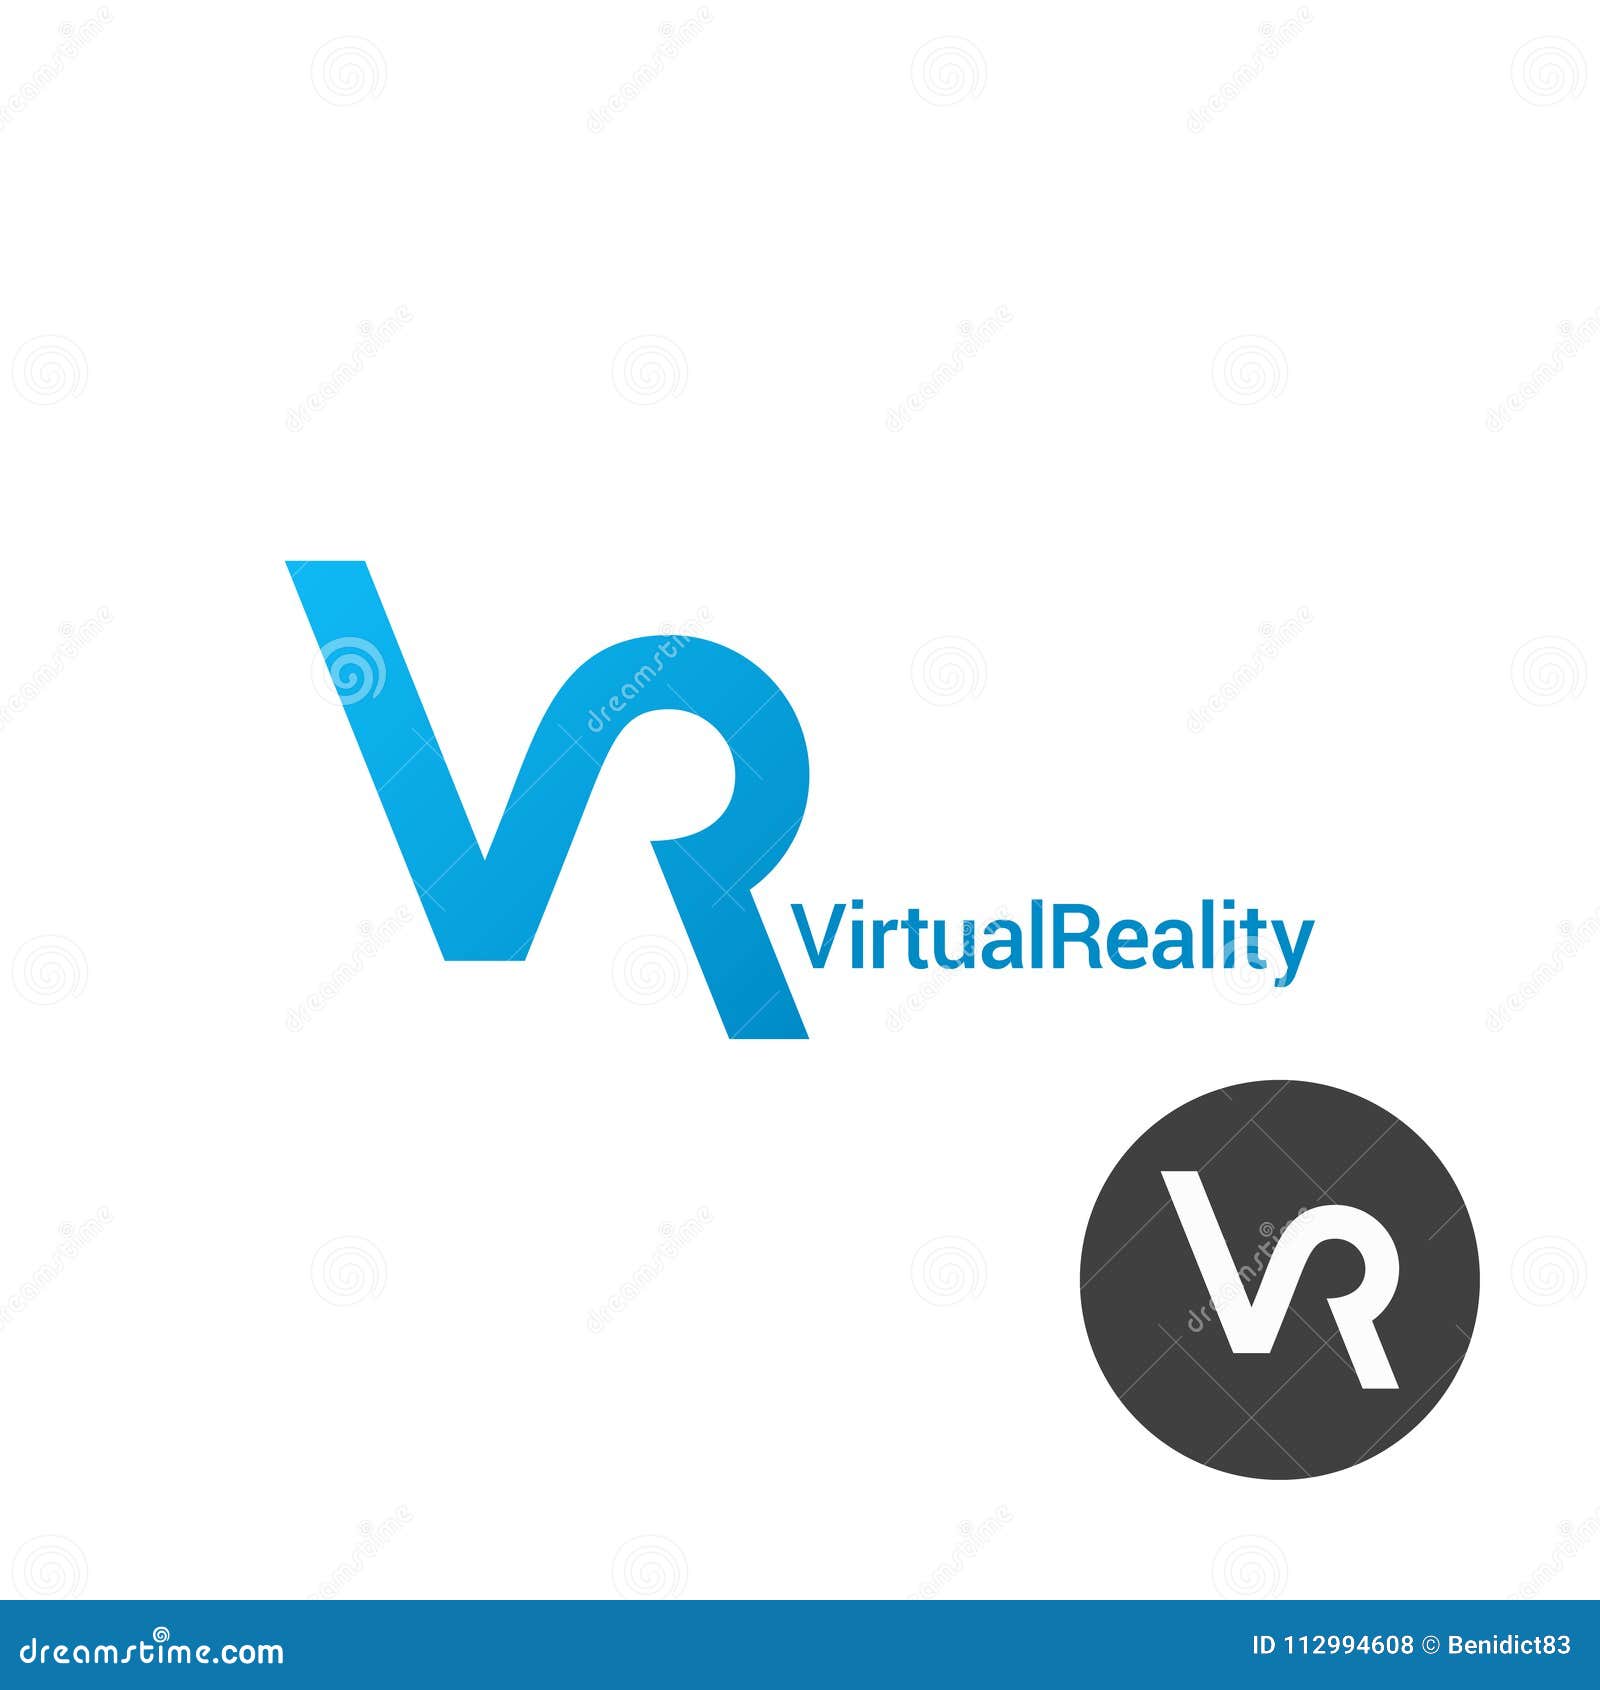 Metaverse Infinity logo - Virtual Reality Logo - Web3 Logo by Ahmed Rumon, Logo Designer